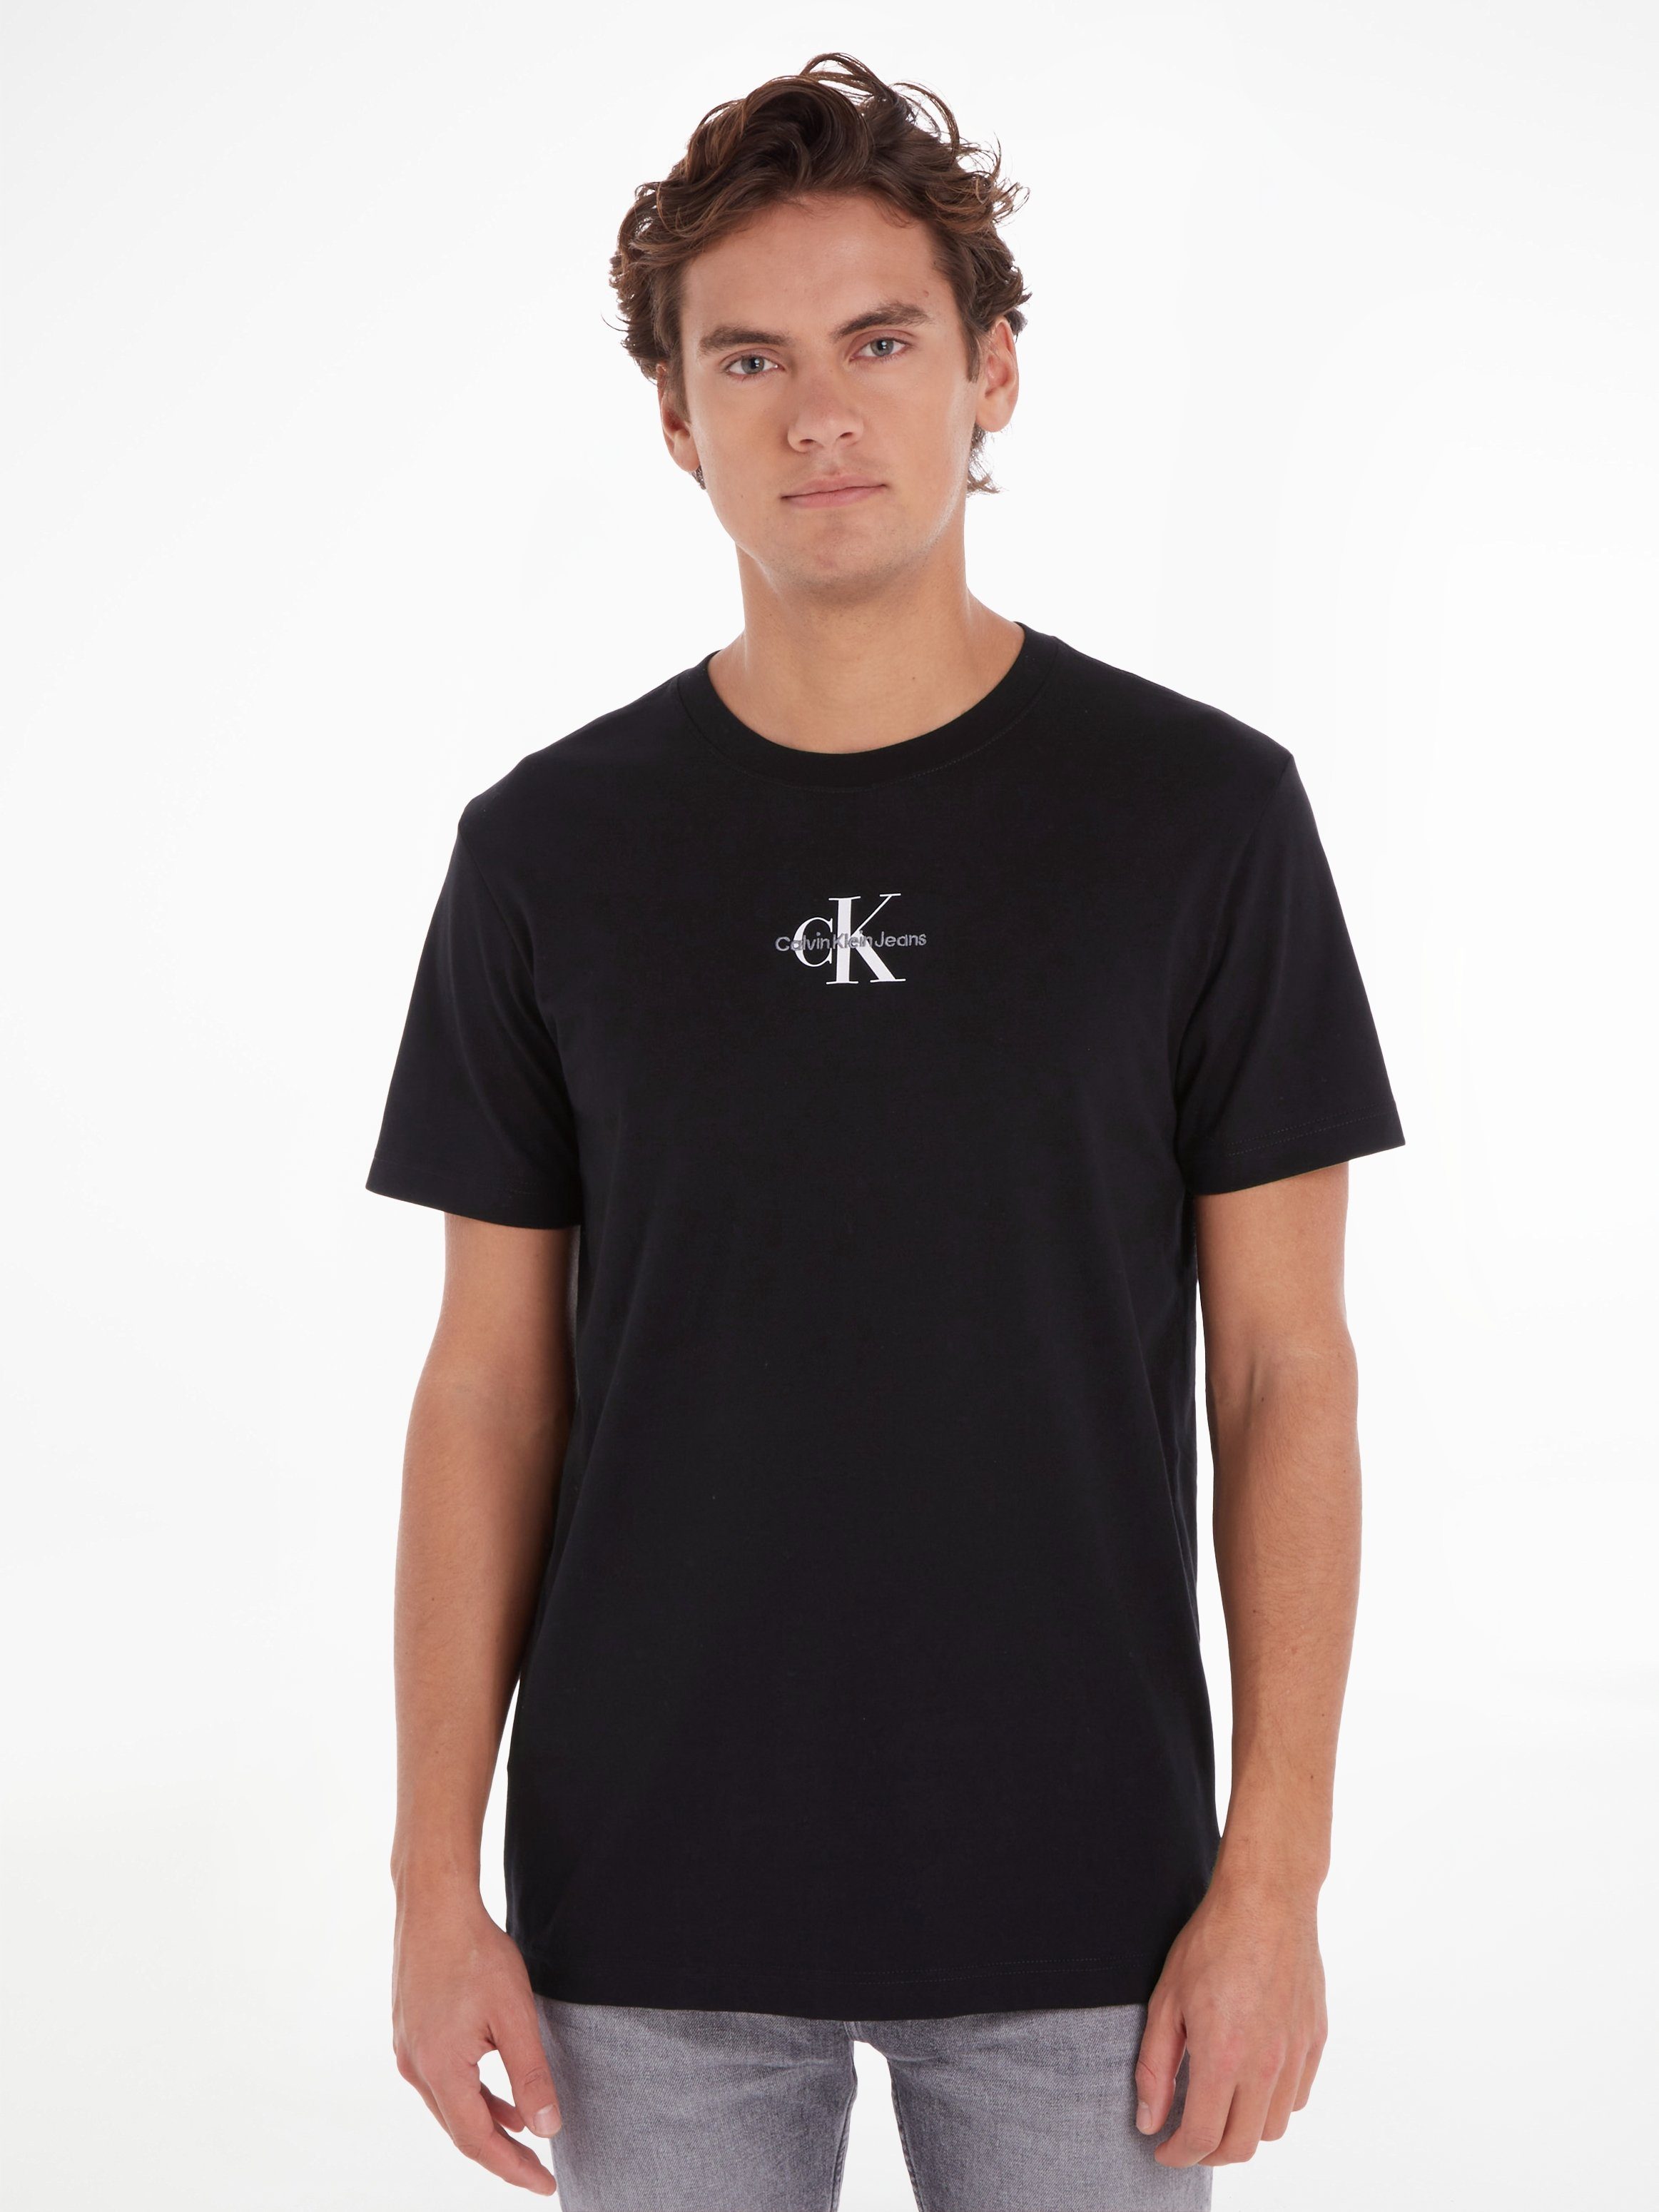 Klein Jeans Black TEE MONOLOGO Ck REGULAR mit T-Shirt Calvin Logoschriftzug